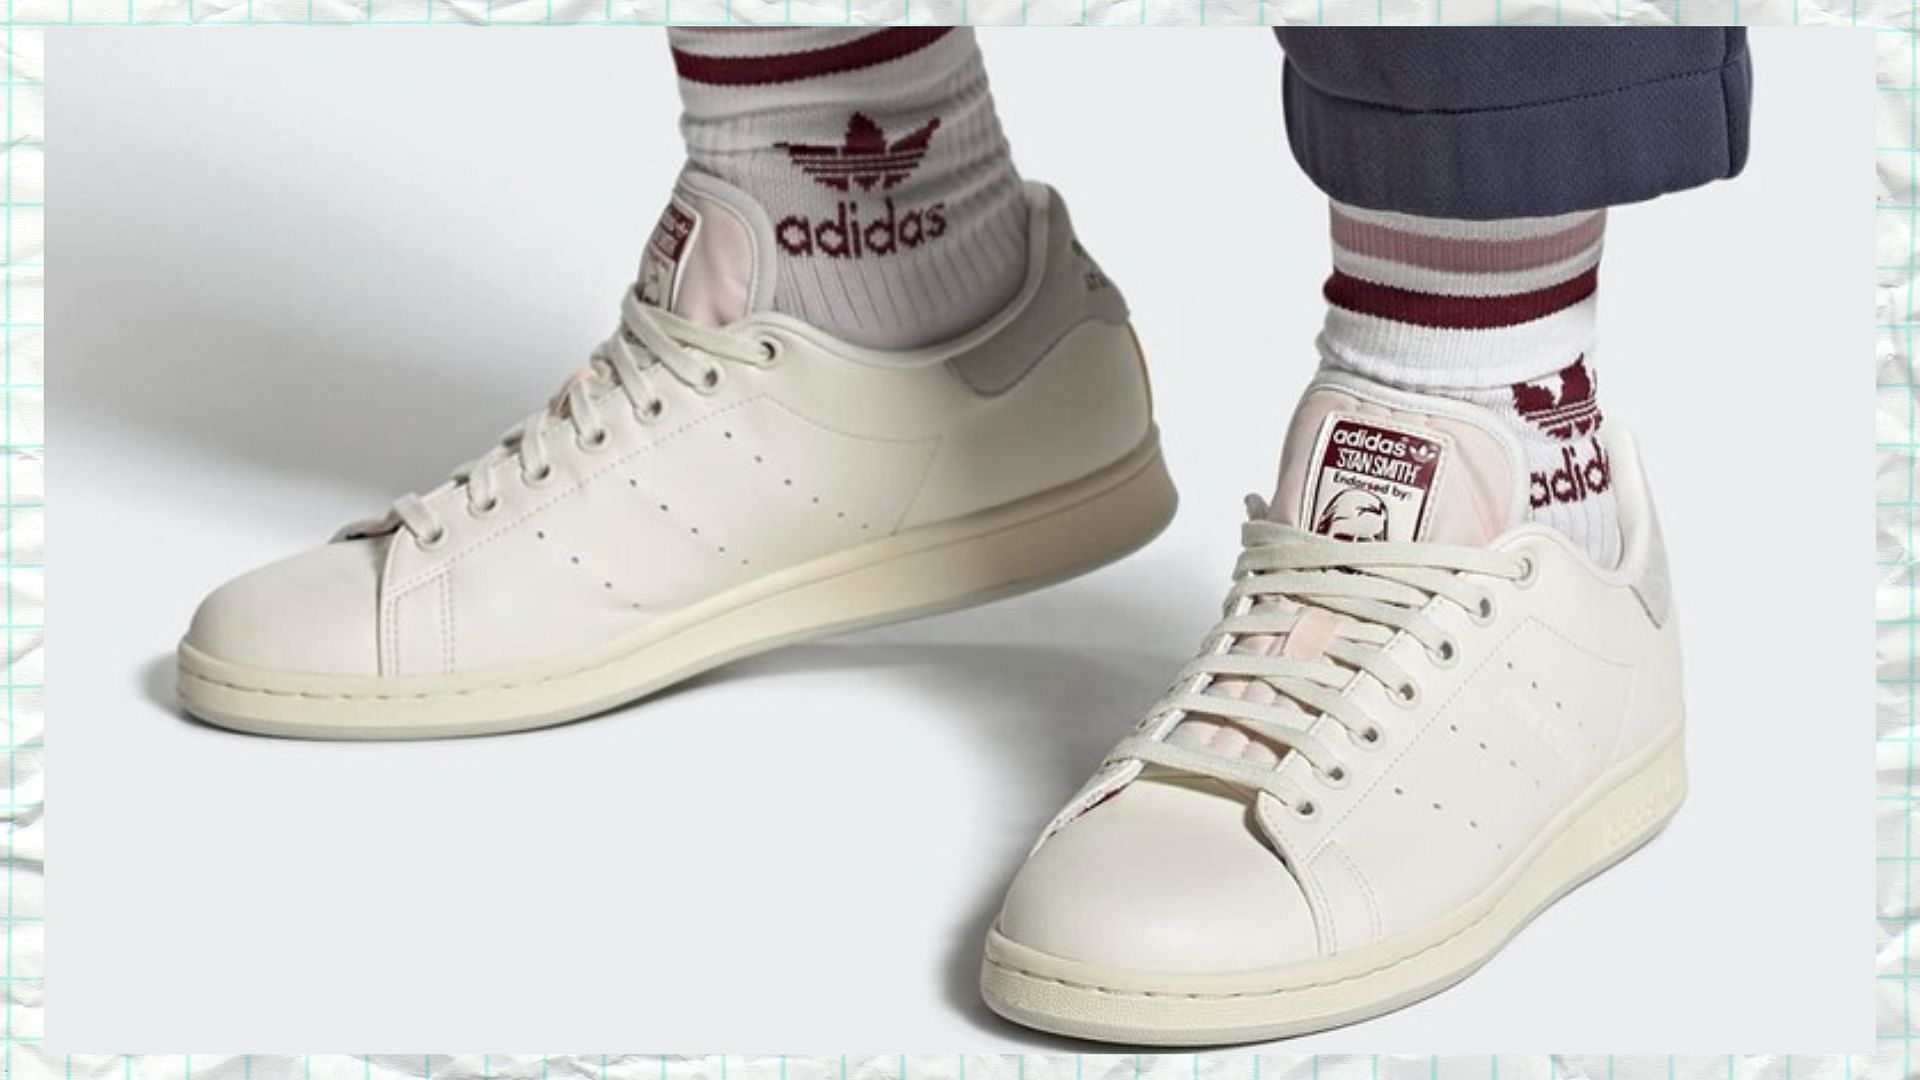 Adidas Originals Stan Smith Stanniversary sneakers (Image via Adidas)